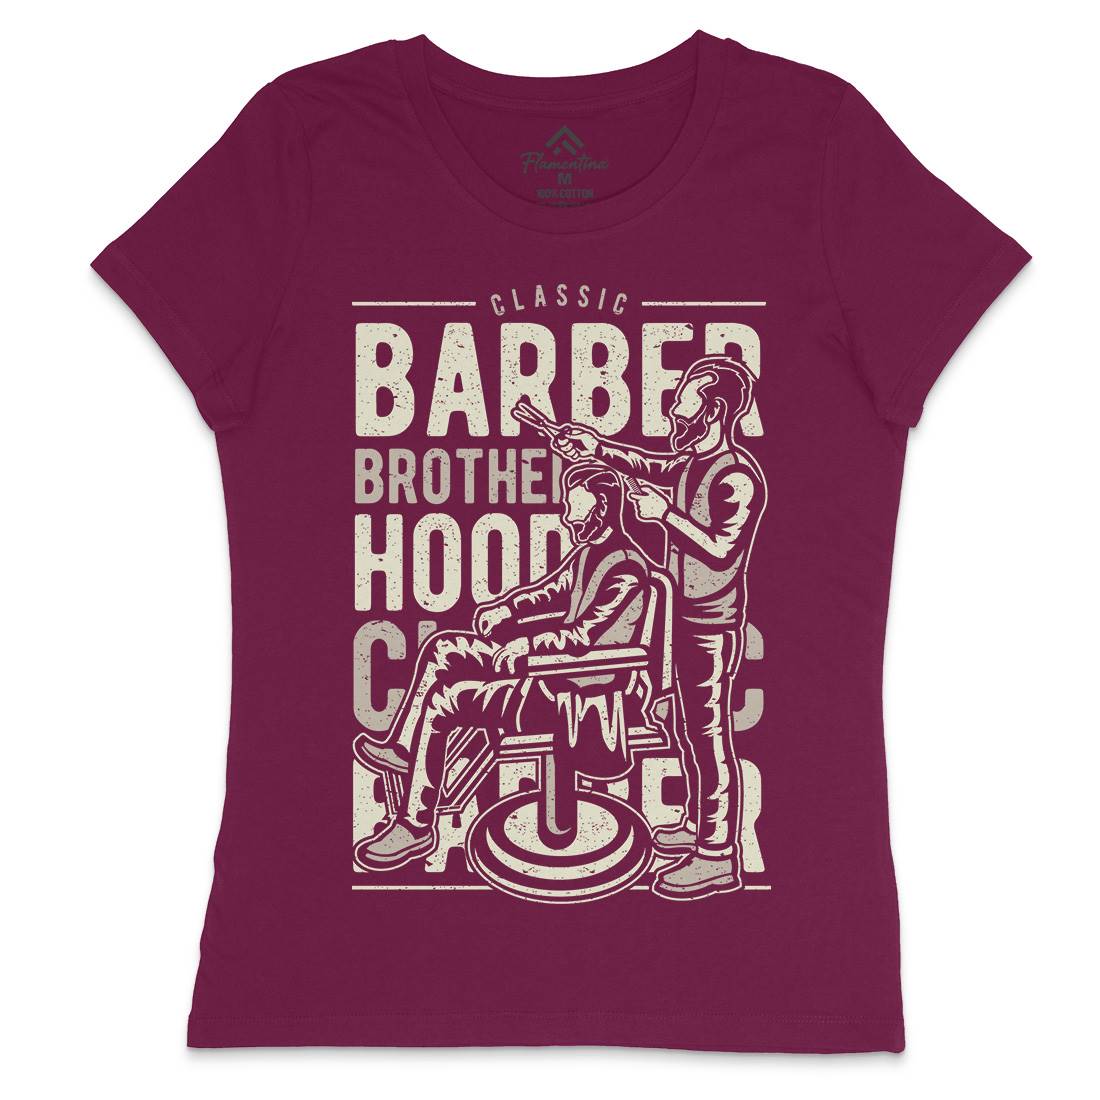 Brotherhood Womens Crew Neck T-Shirt Barber A009